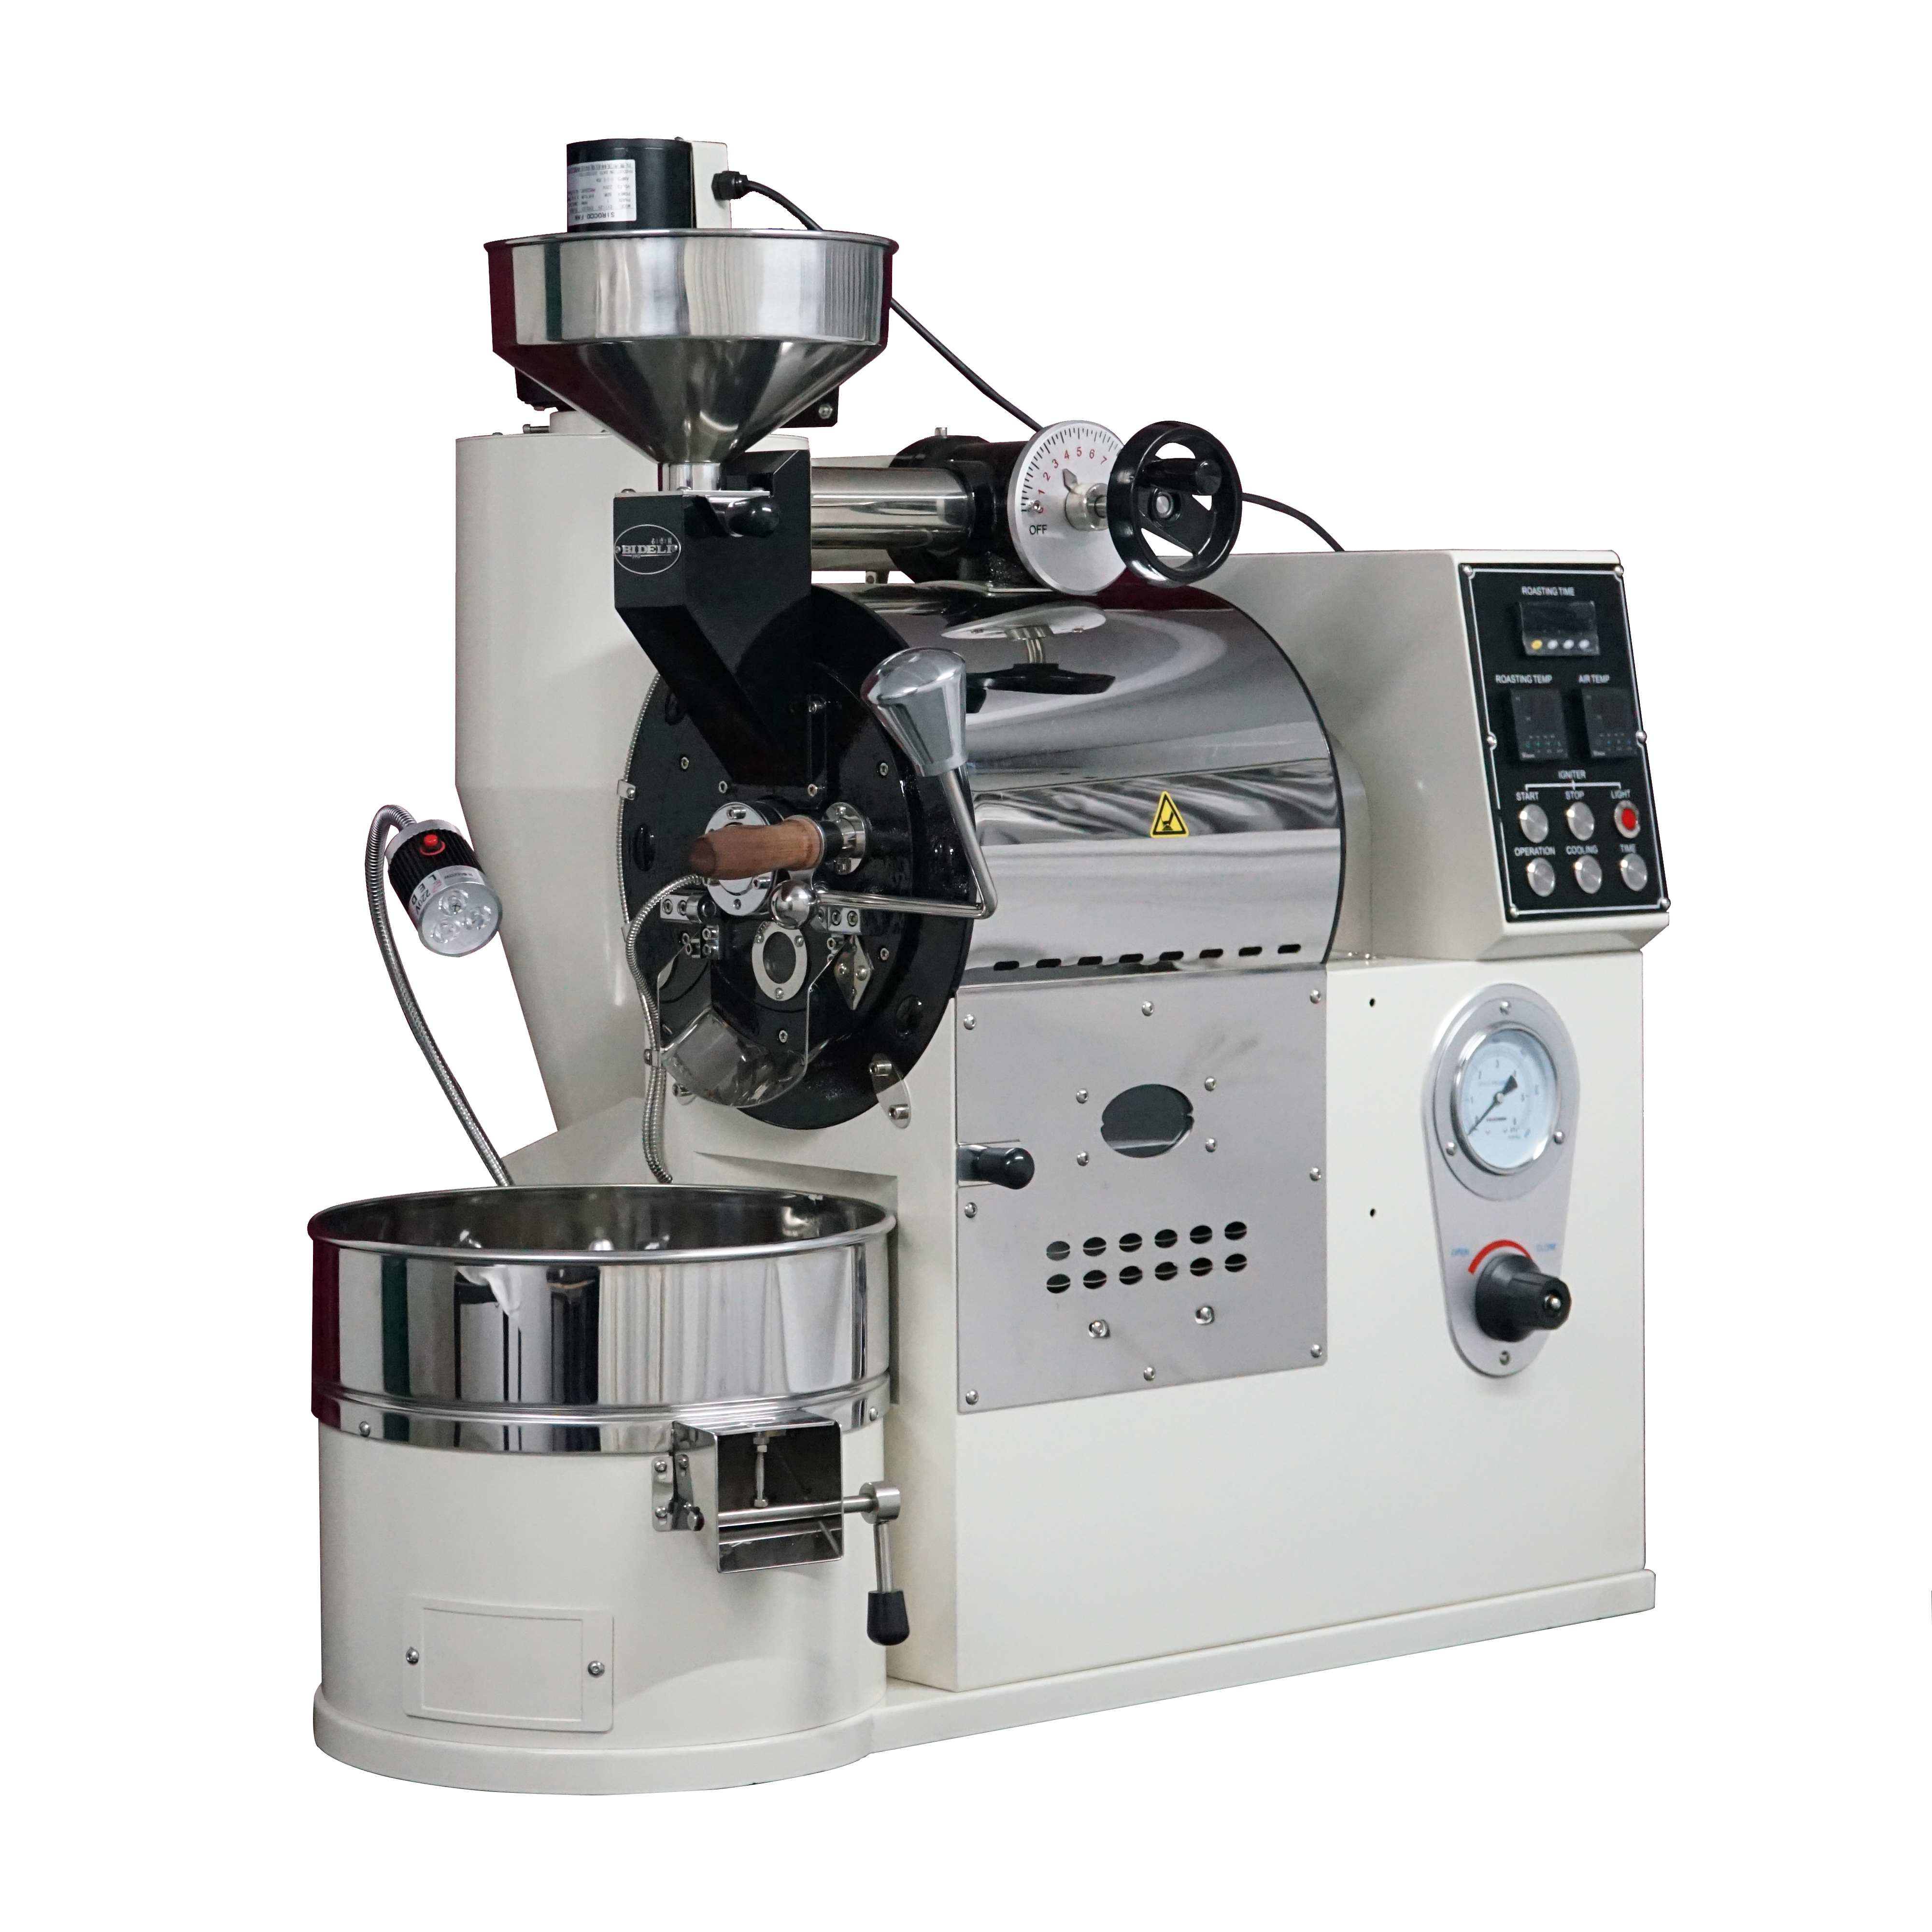 1.5KG咖啡烘焙机-瓦斯型